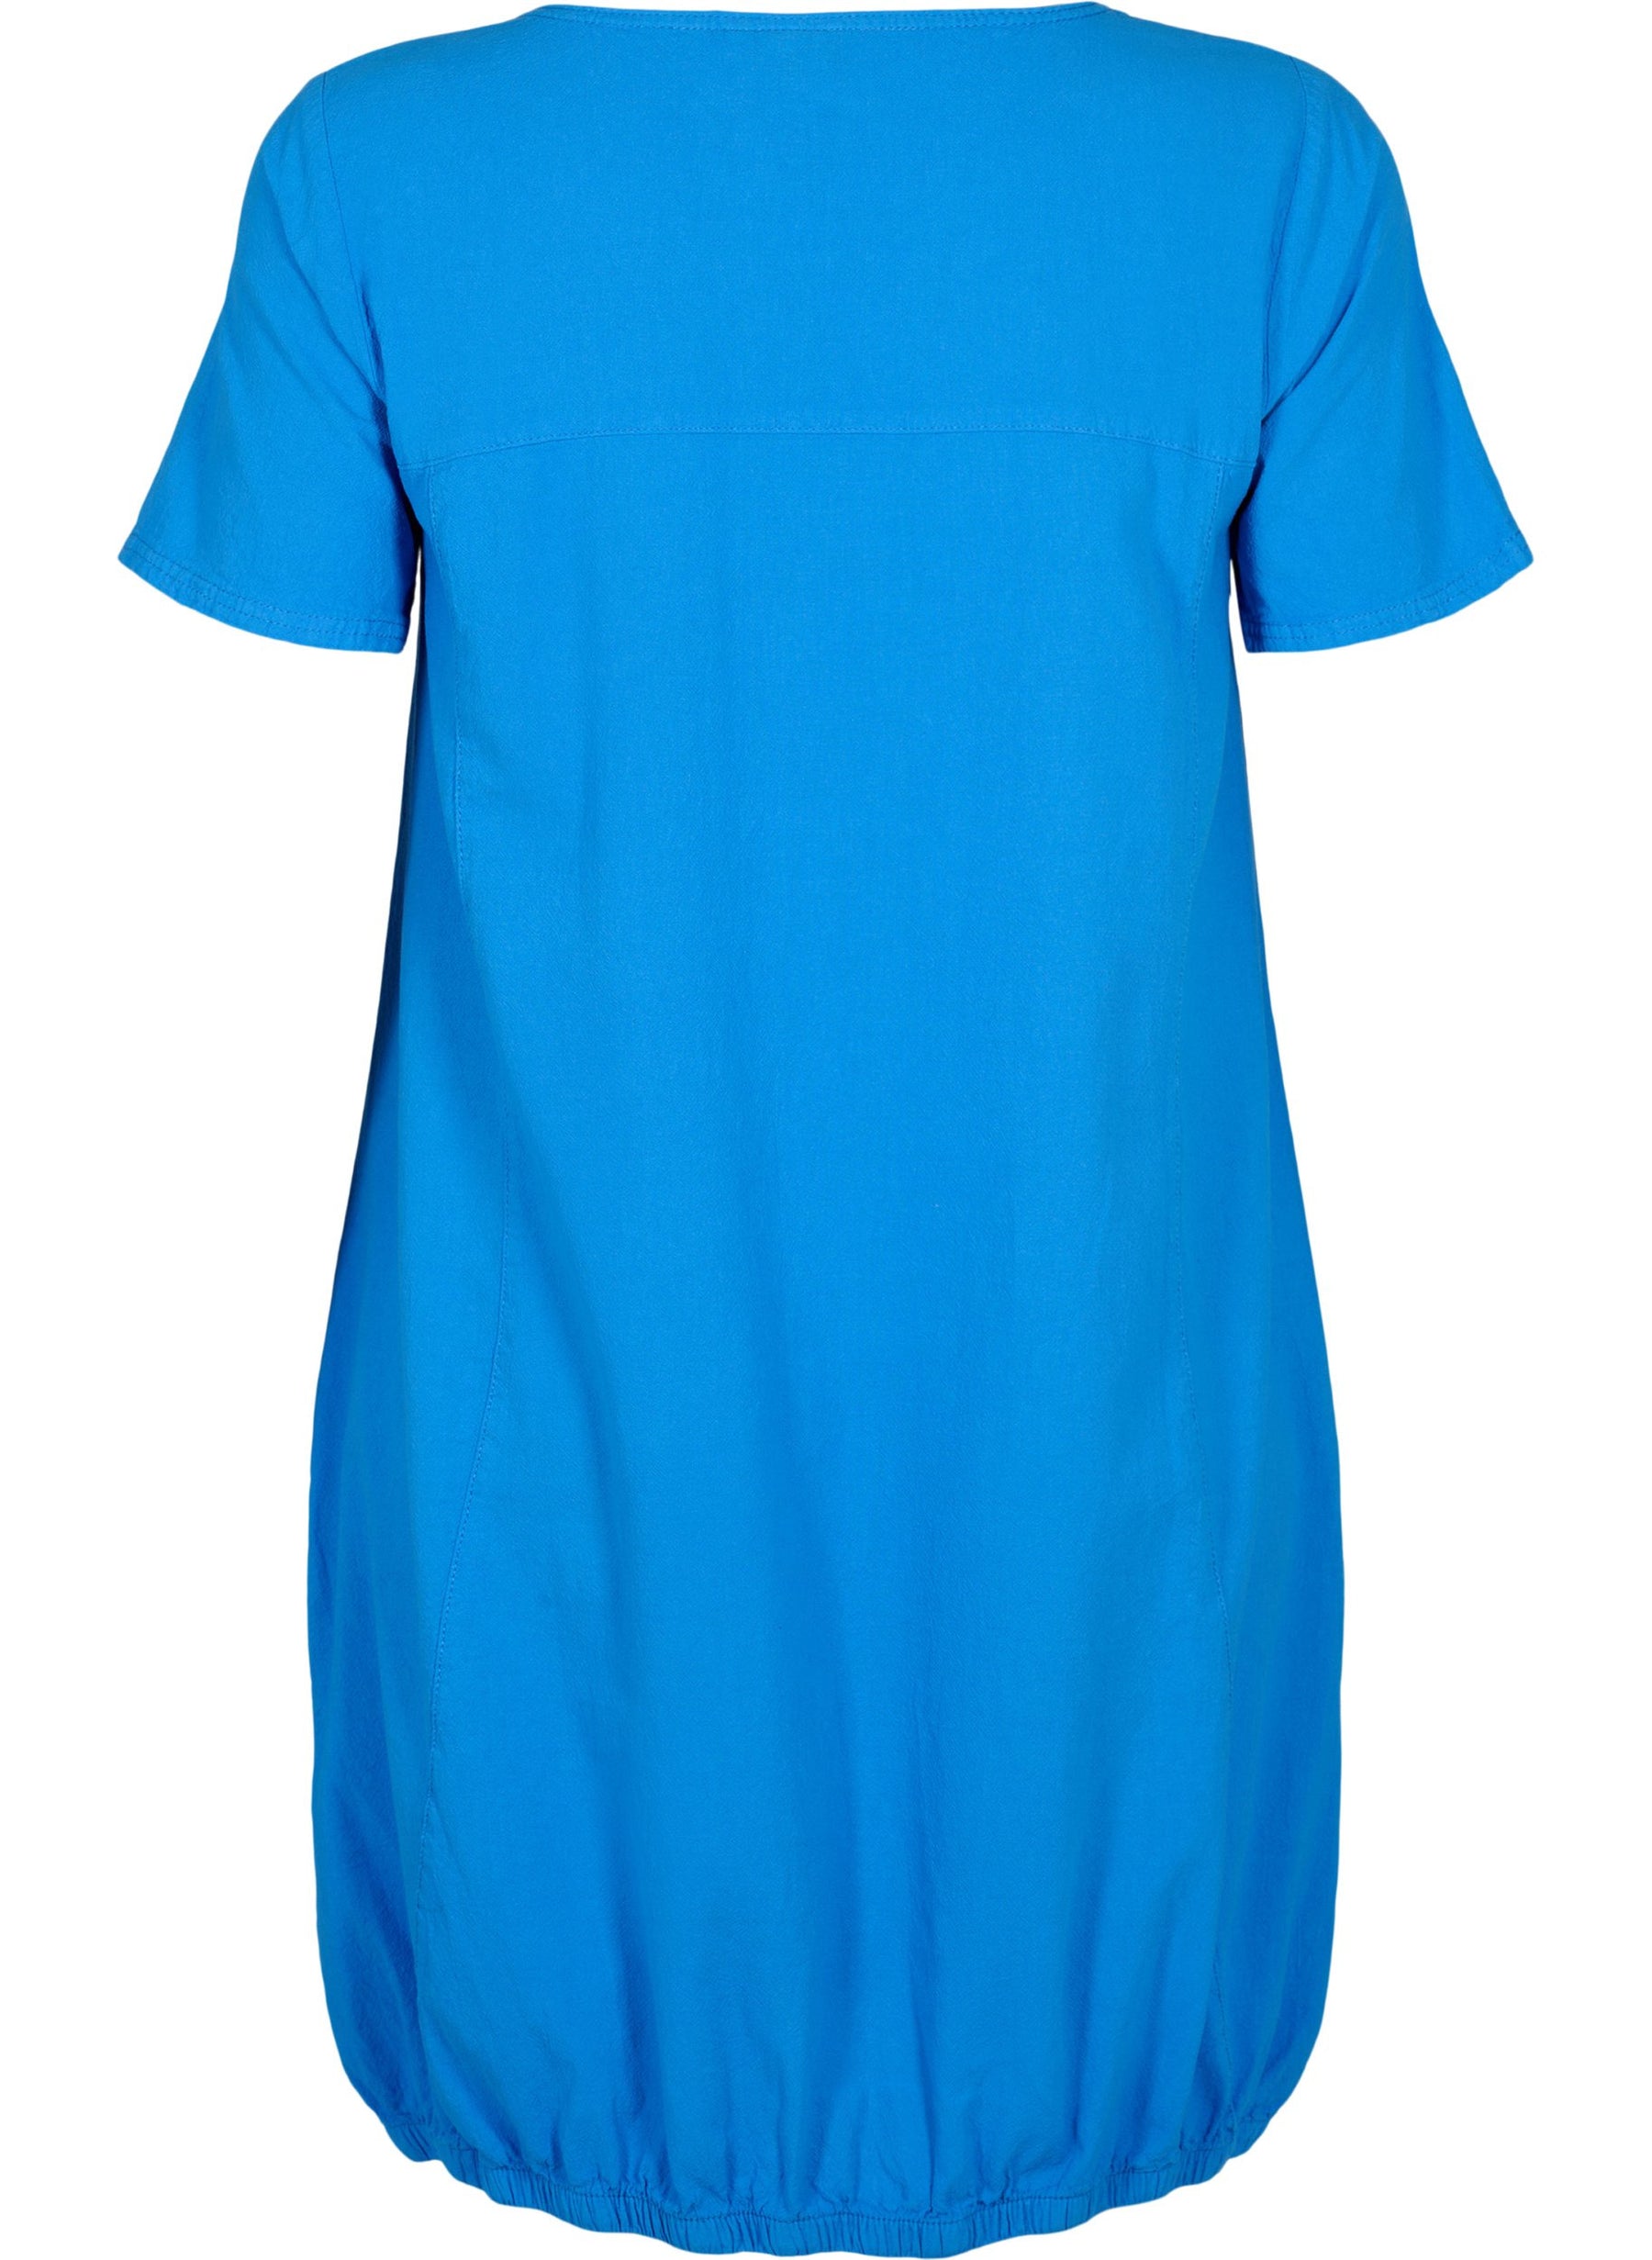 Zizzi Cotton Bubble Dress in Blue - Wardrobe Plus